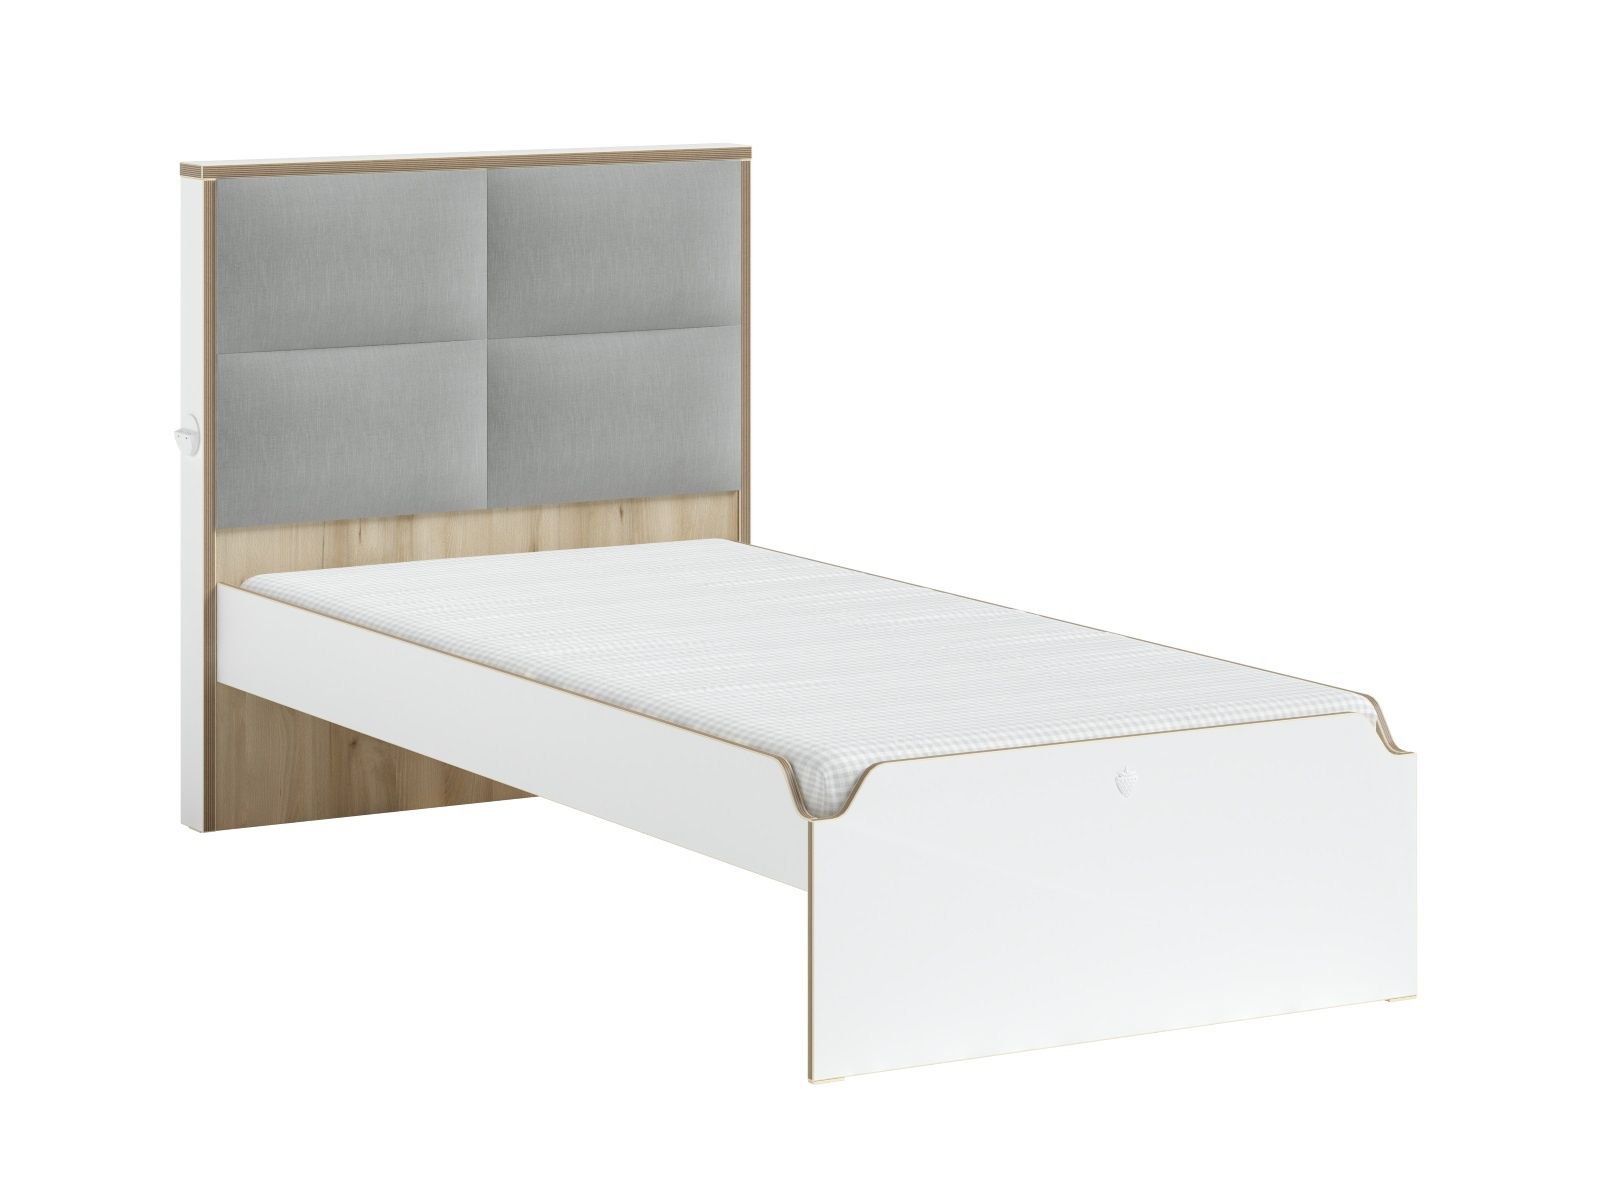 Studentská postel s čalouněným čelem 100x200cm Dylan - bílá/dub světlý - Nábytek Harmonia s.r.o.